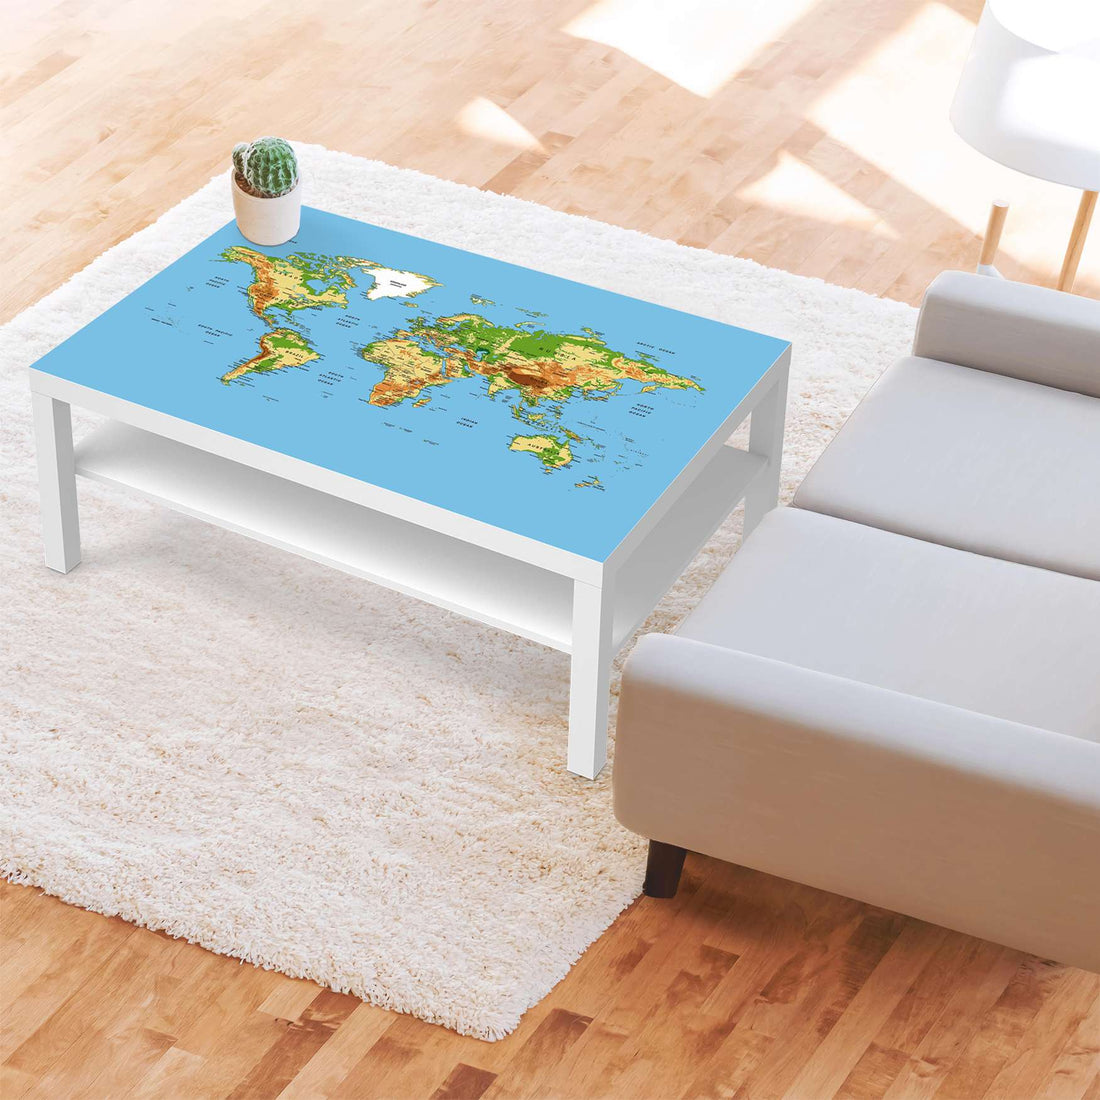 Klebefolie Geografische Weltkarte - IKEA Lack Tisch 118x78 cm - Wohnzimmer